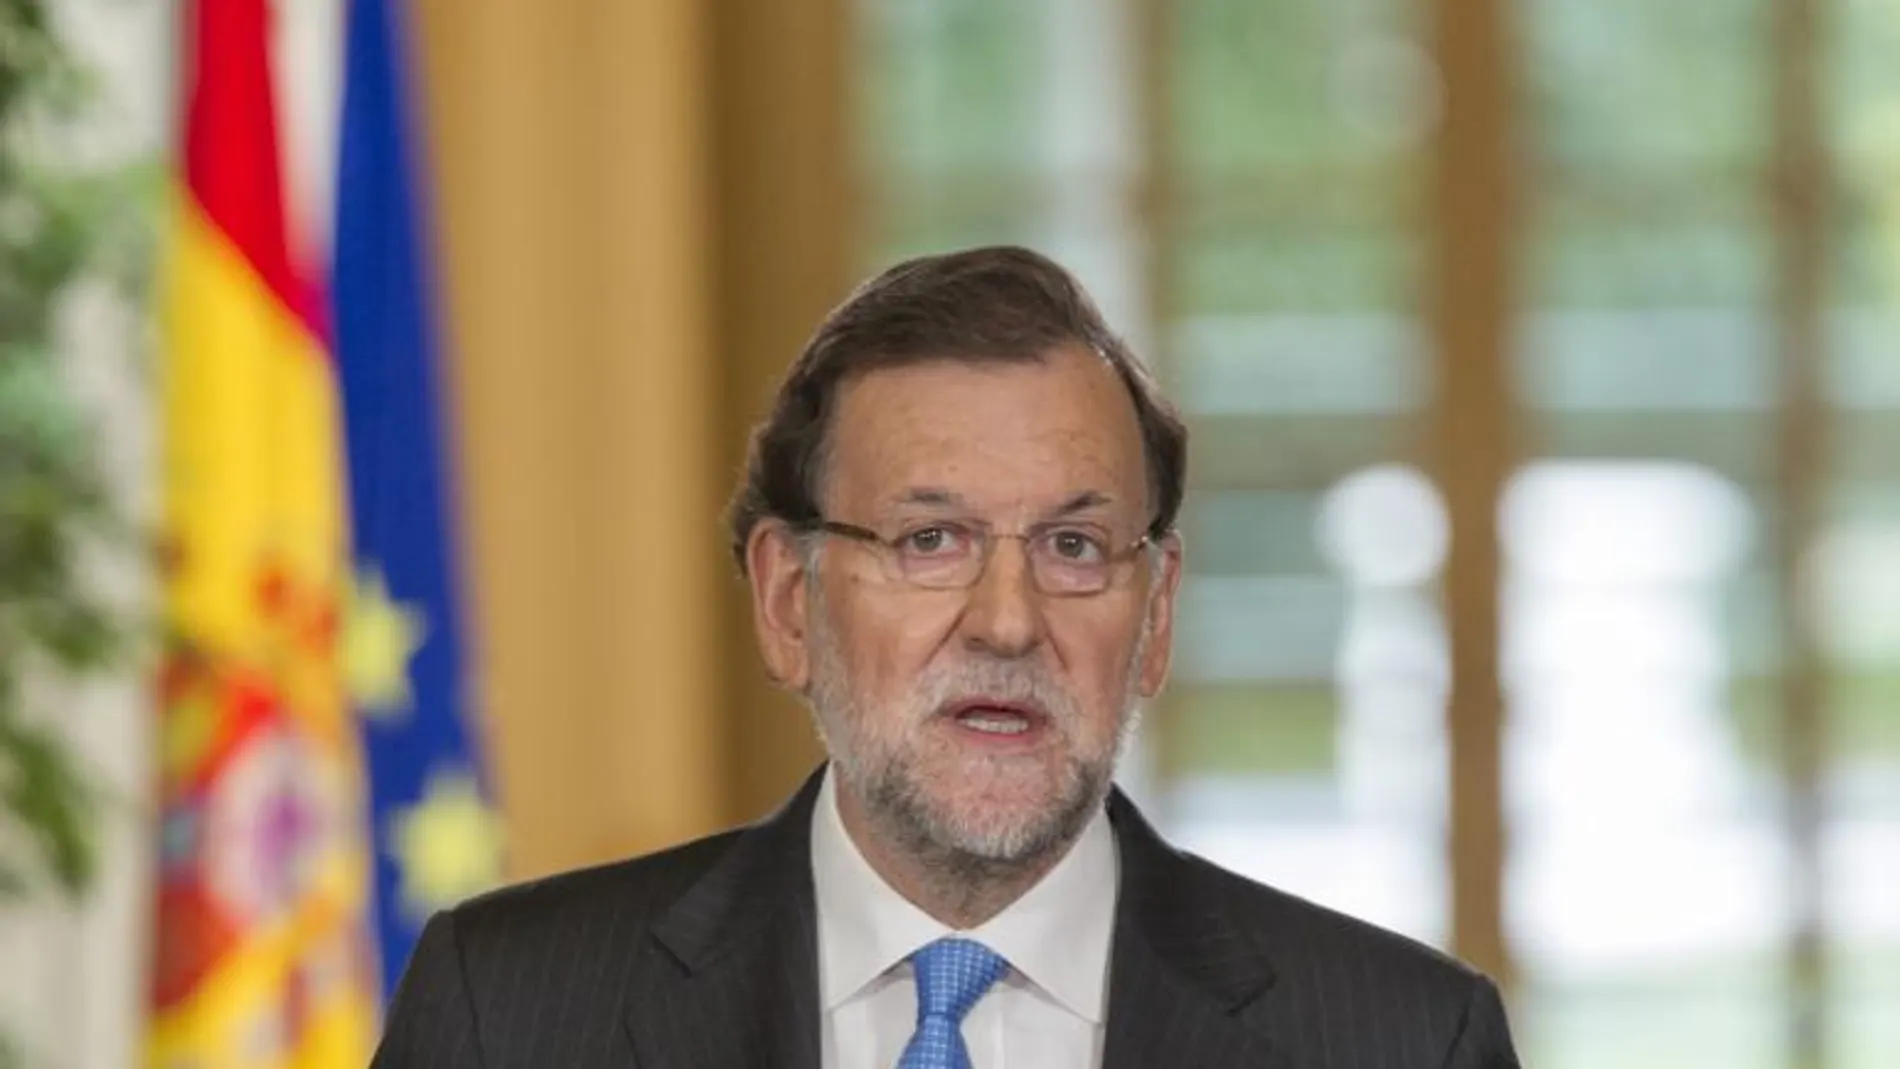 El presidente del Gobierno y candidato del PP a las elecciones generales del 20-D, Mariano Rajoy Brey